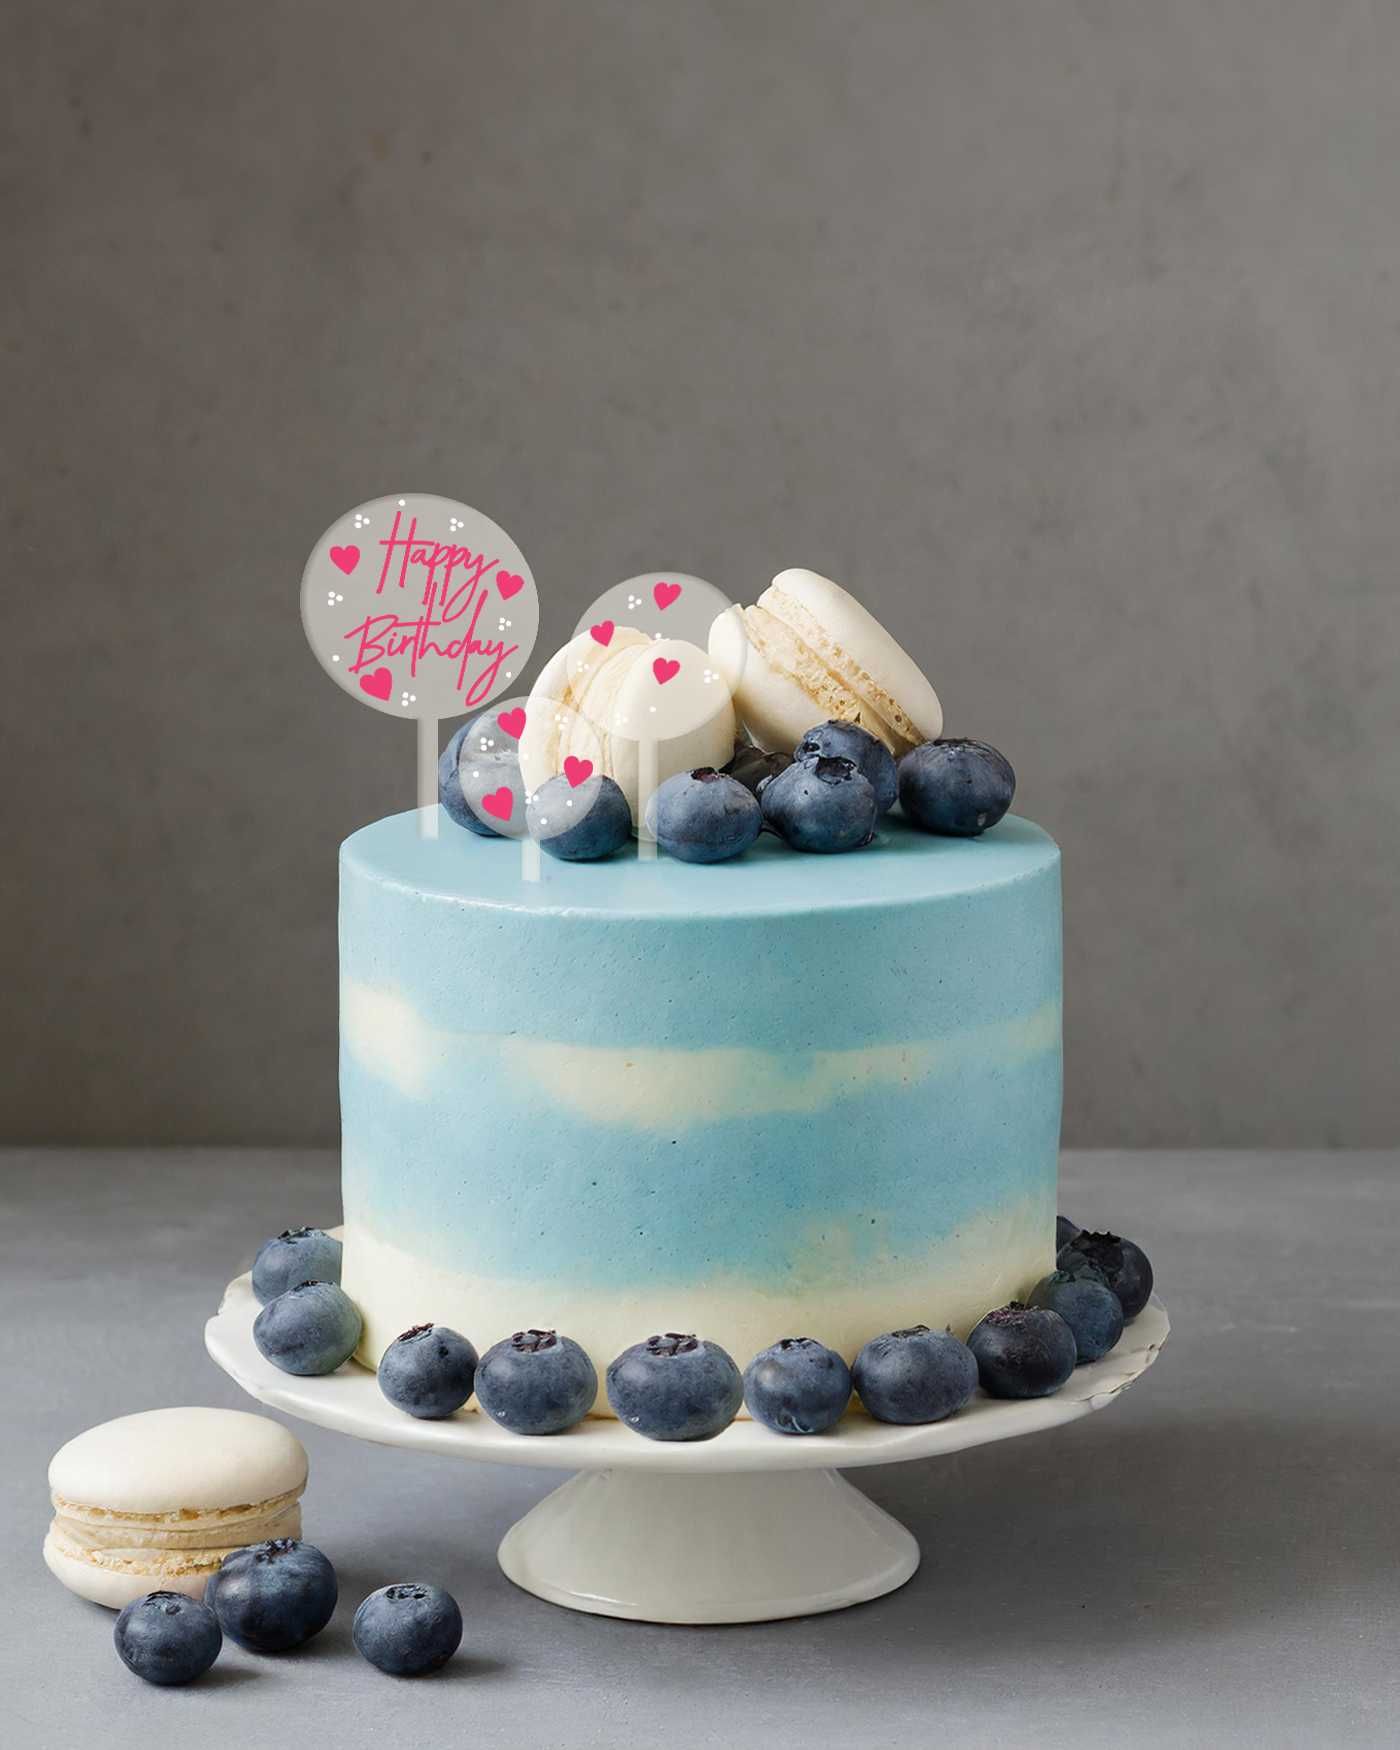 Komplet topperów na tort z napisem “Happy birthday”